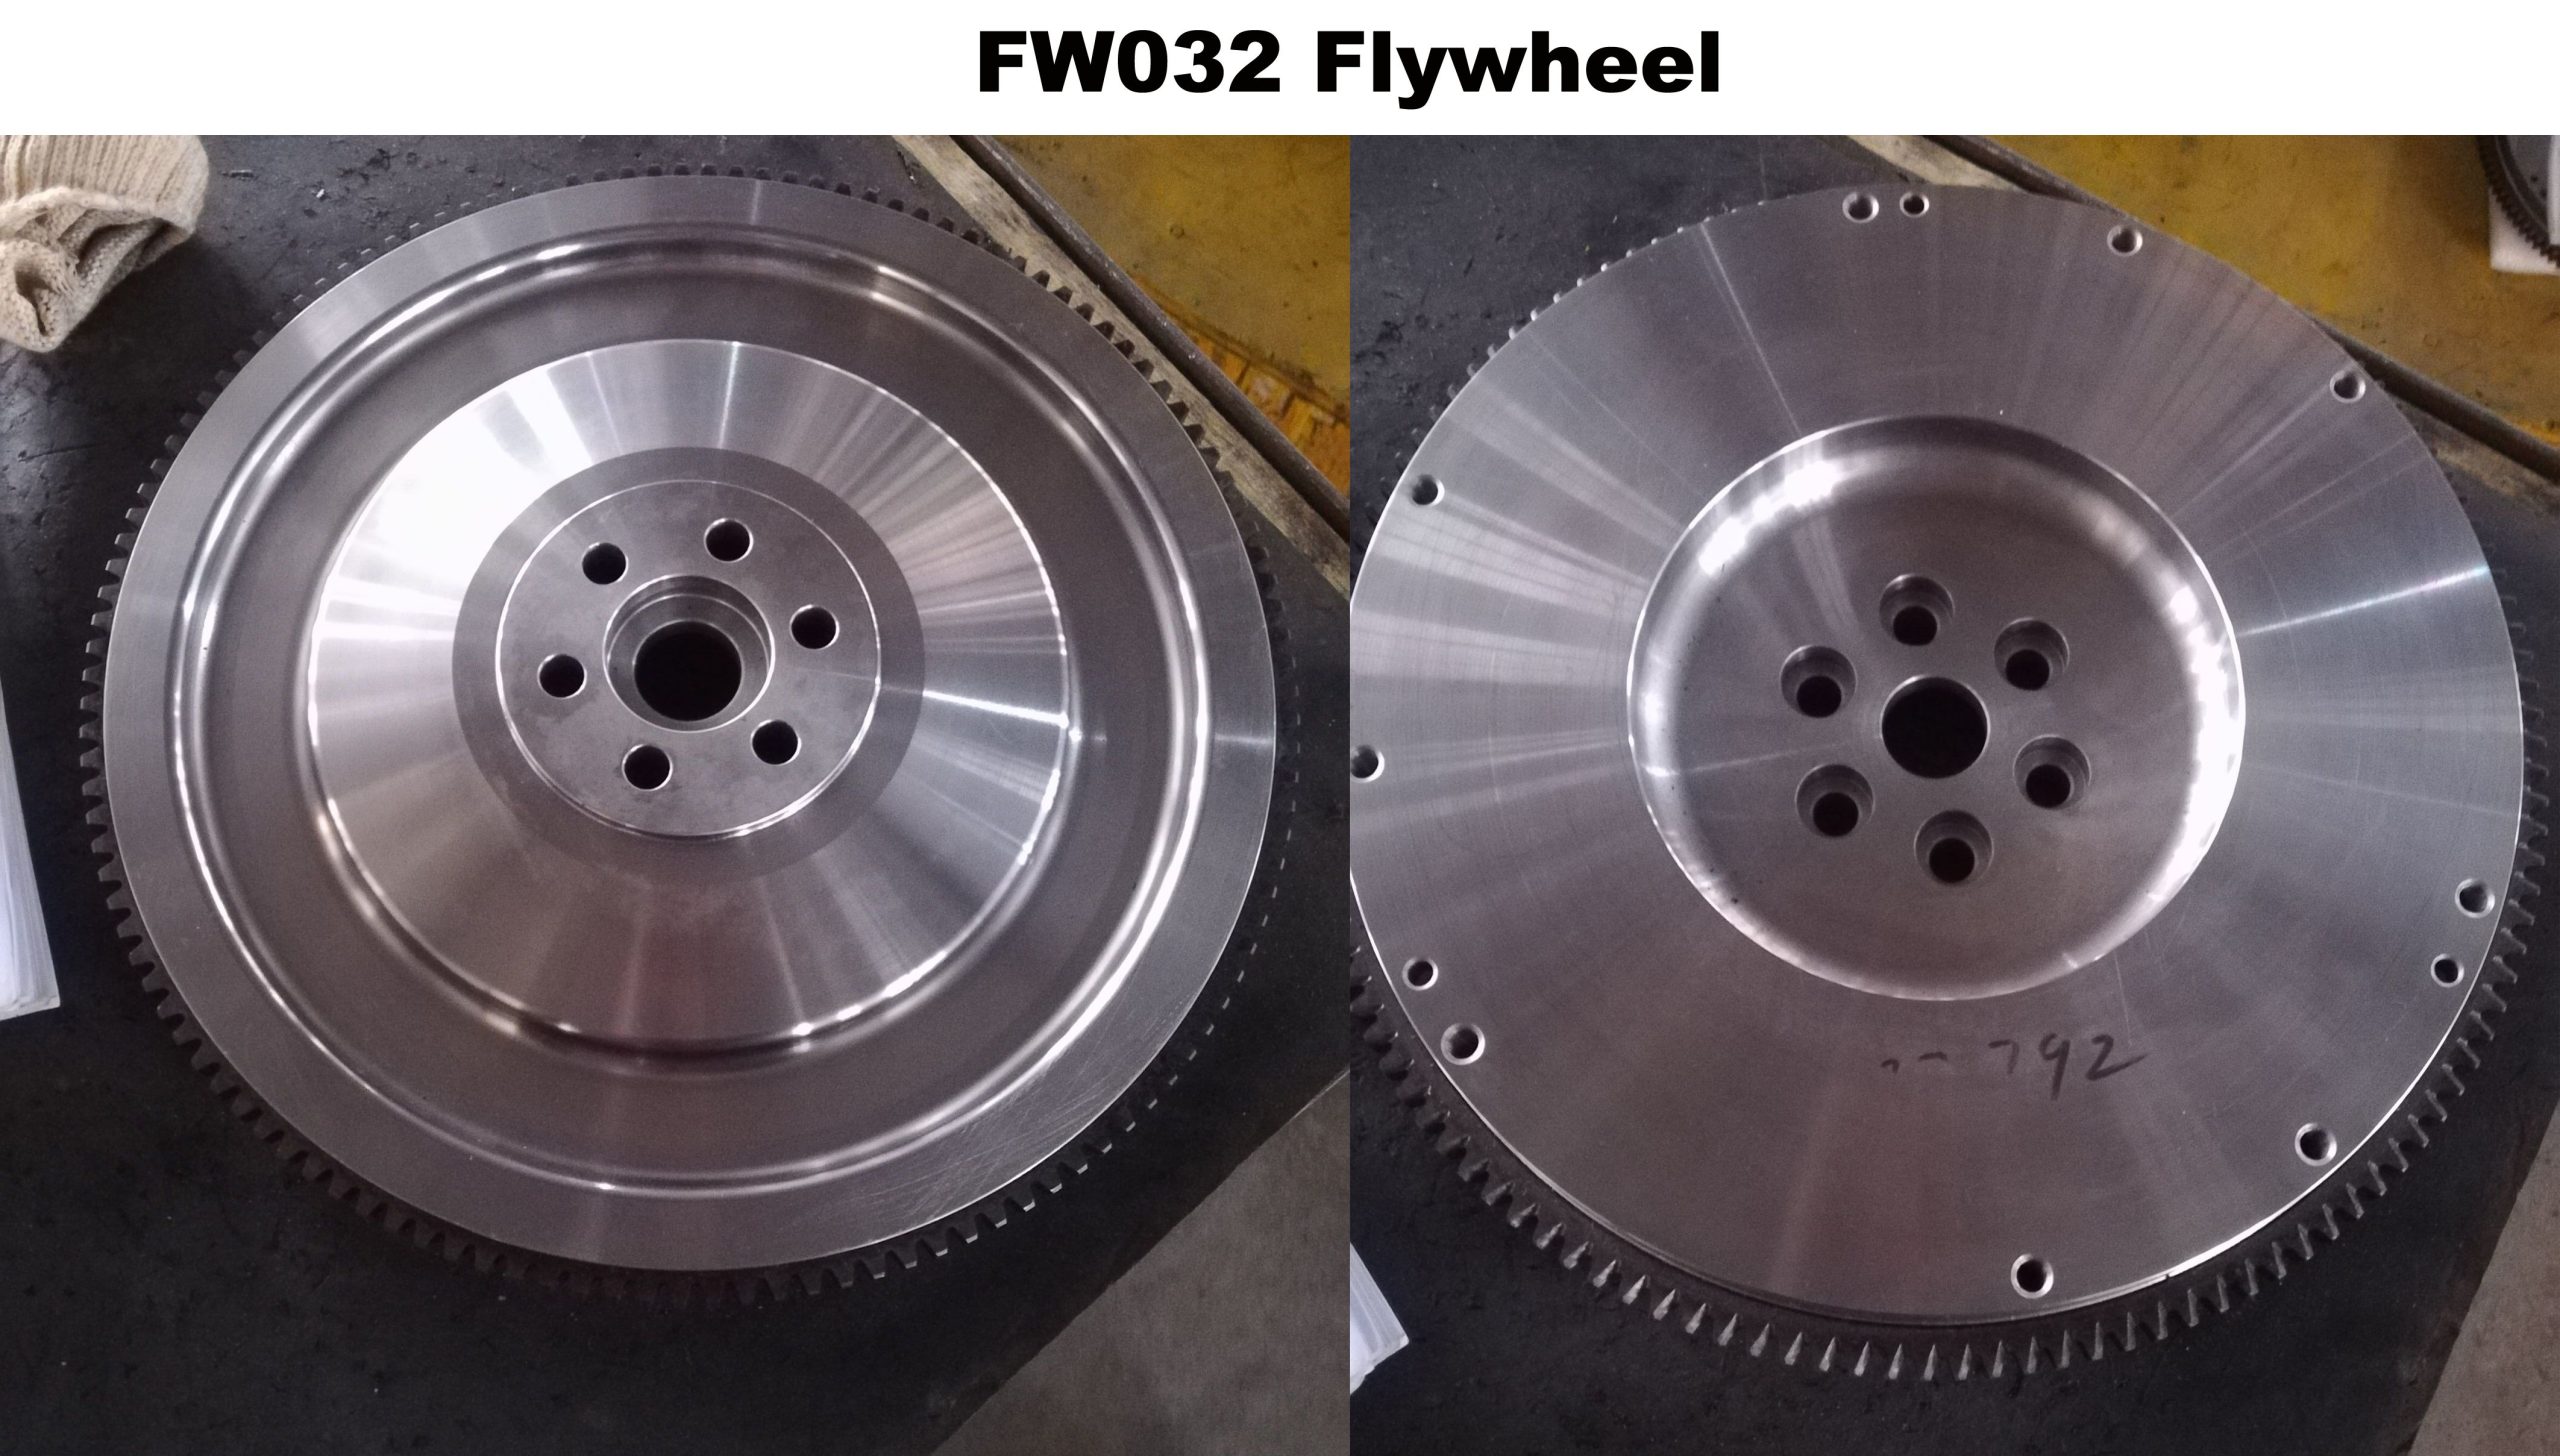 FW032 125 Teeth #45 Steel material or 42CrMo material Proformance racing flywheel